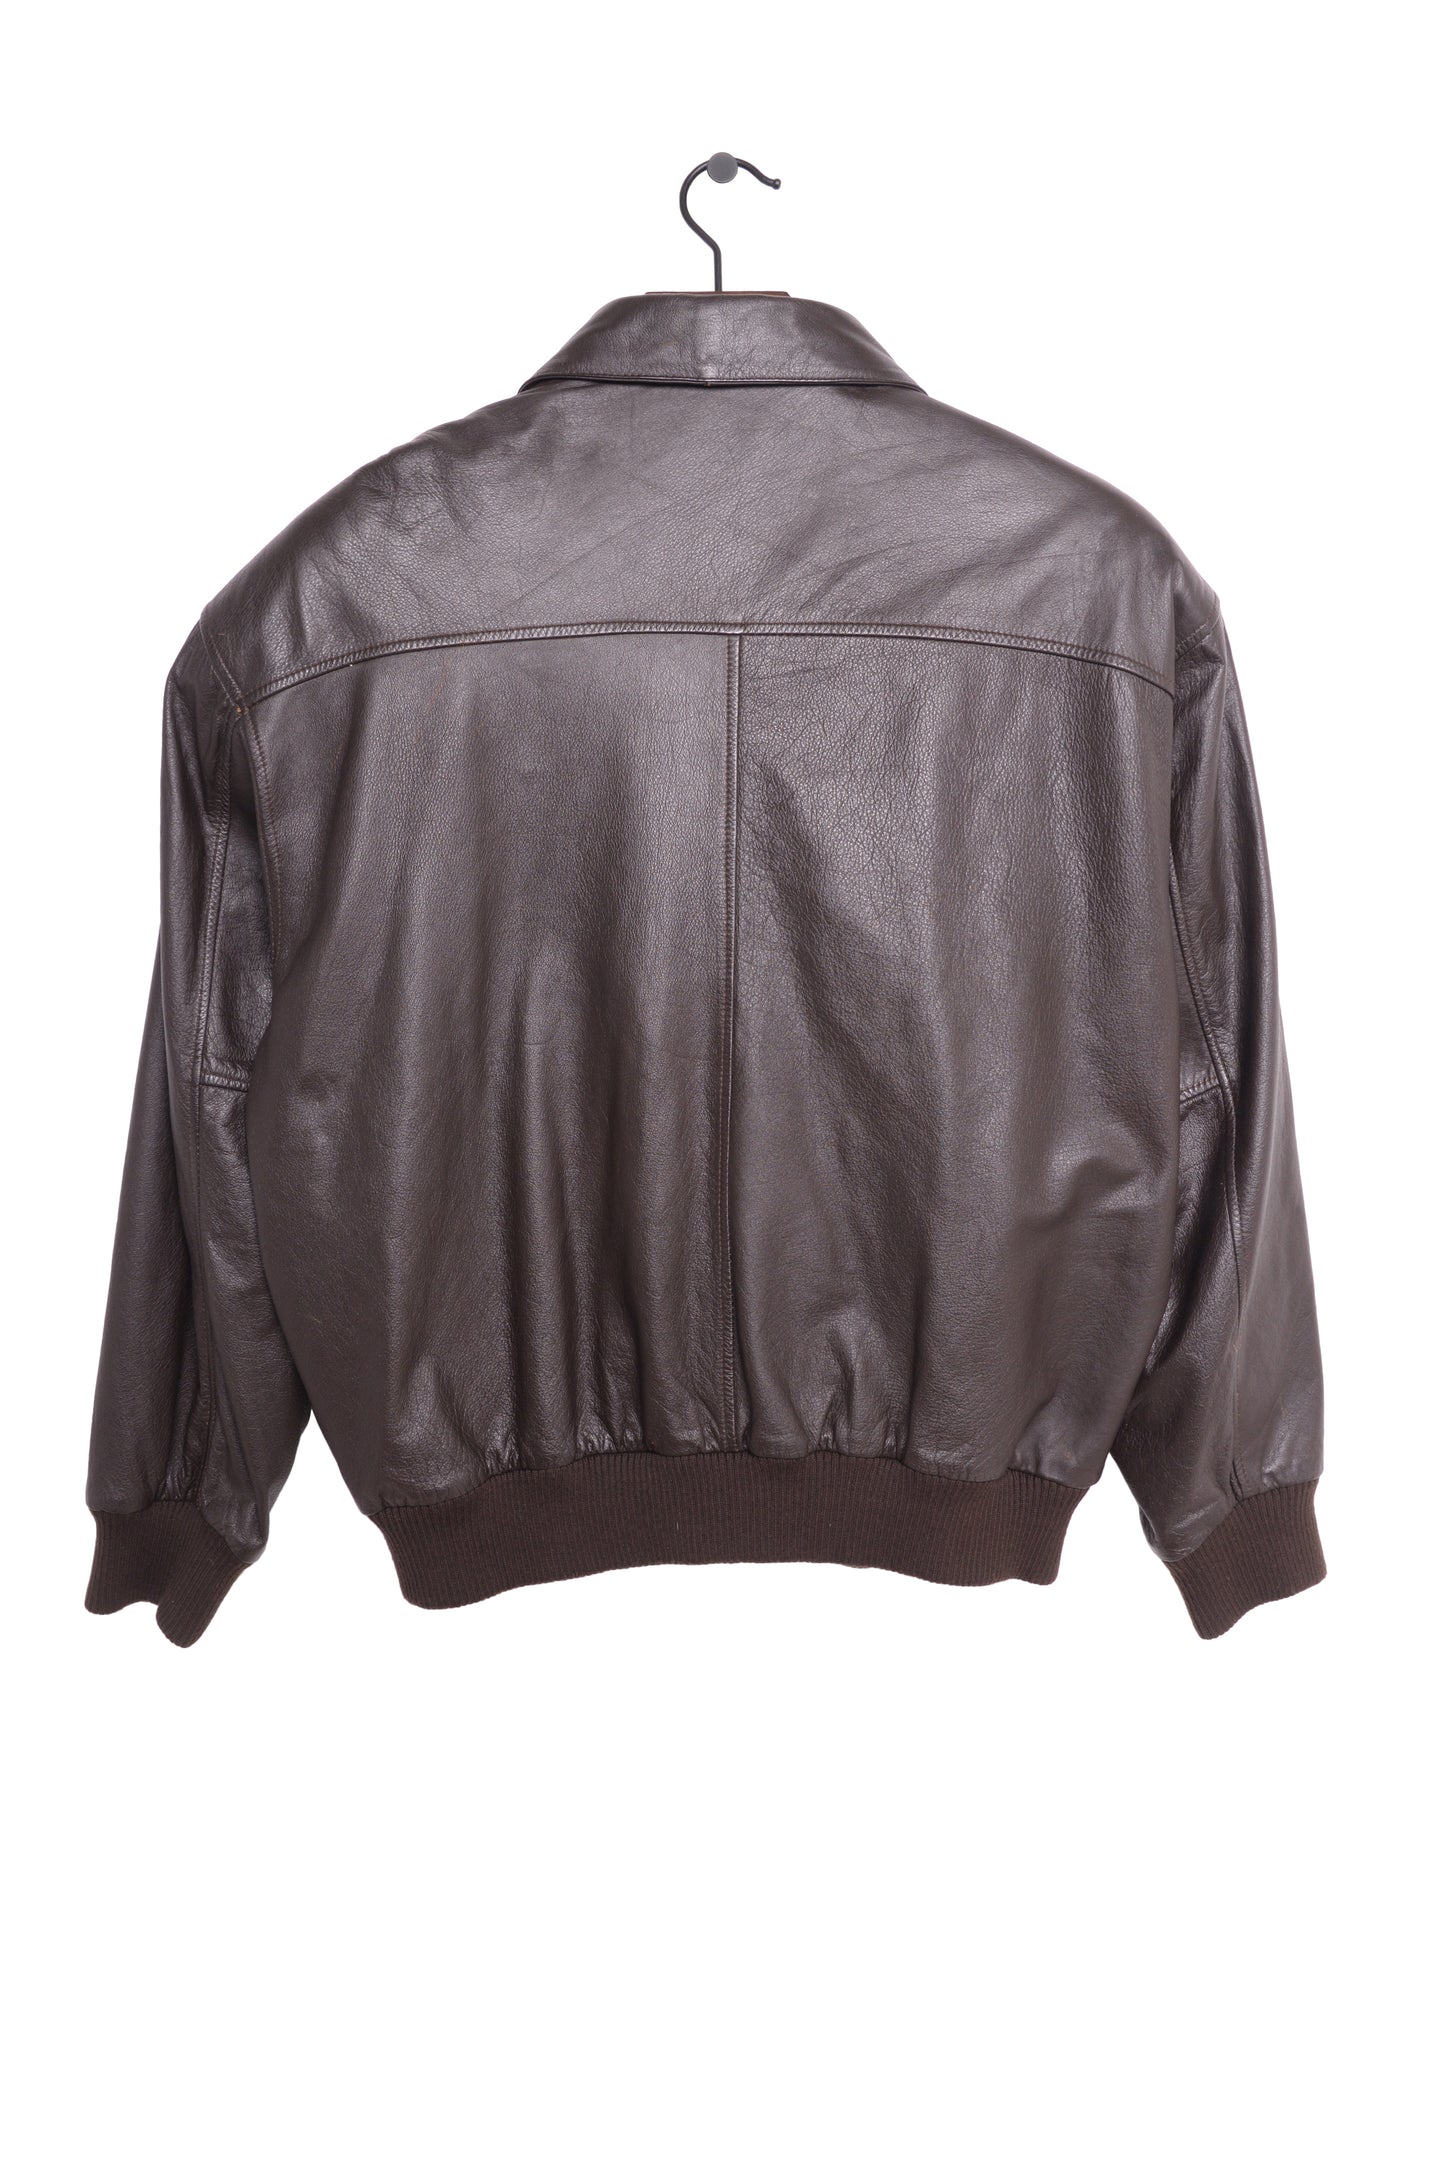 1980s Leather Bomber Jacket